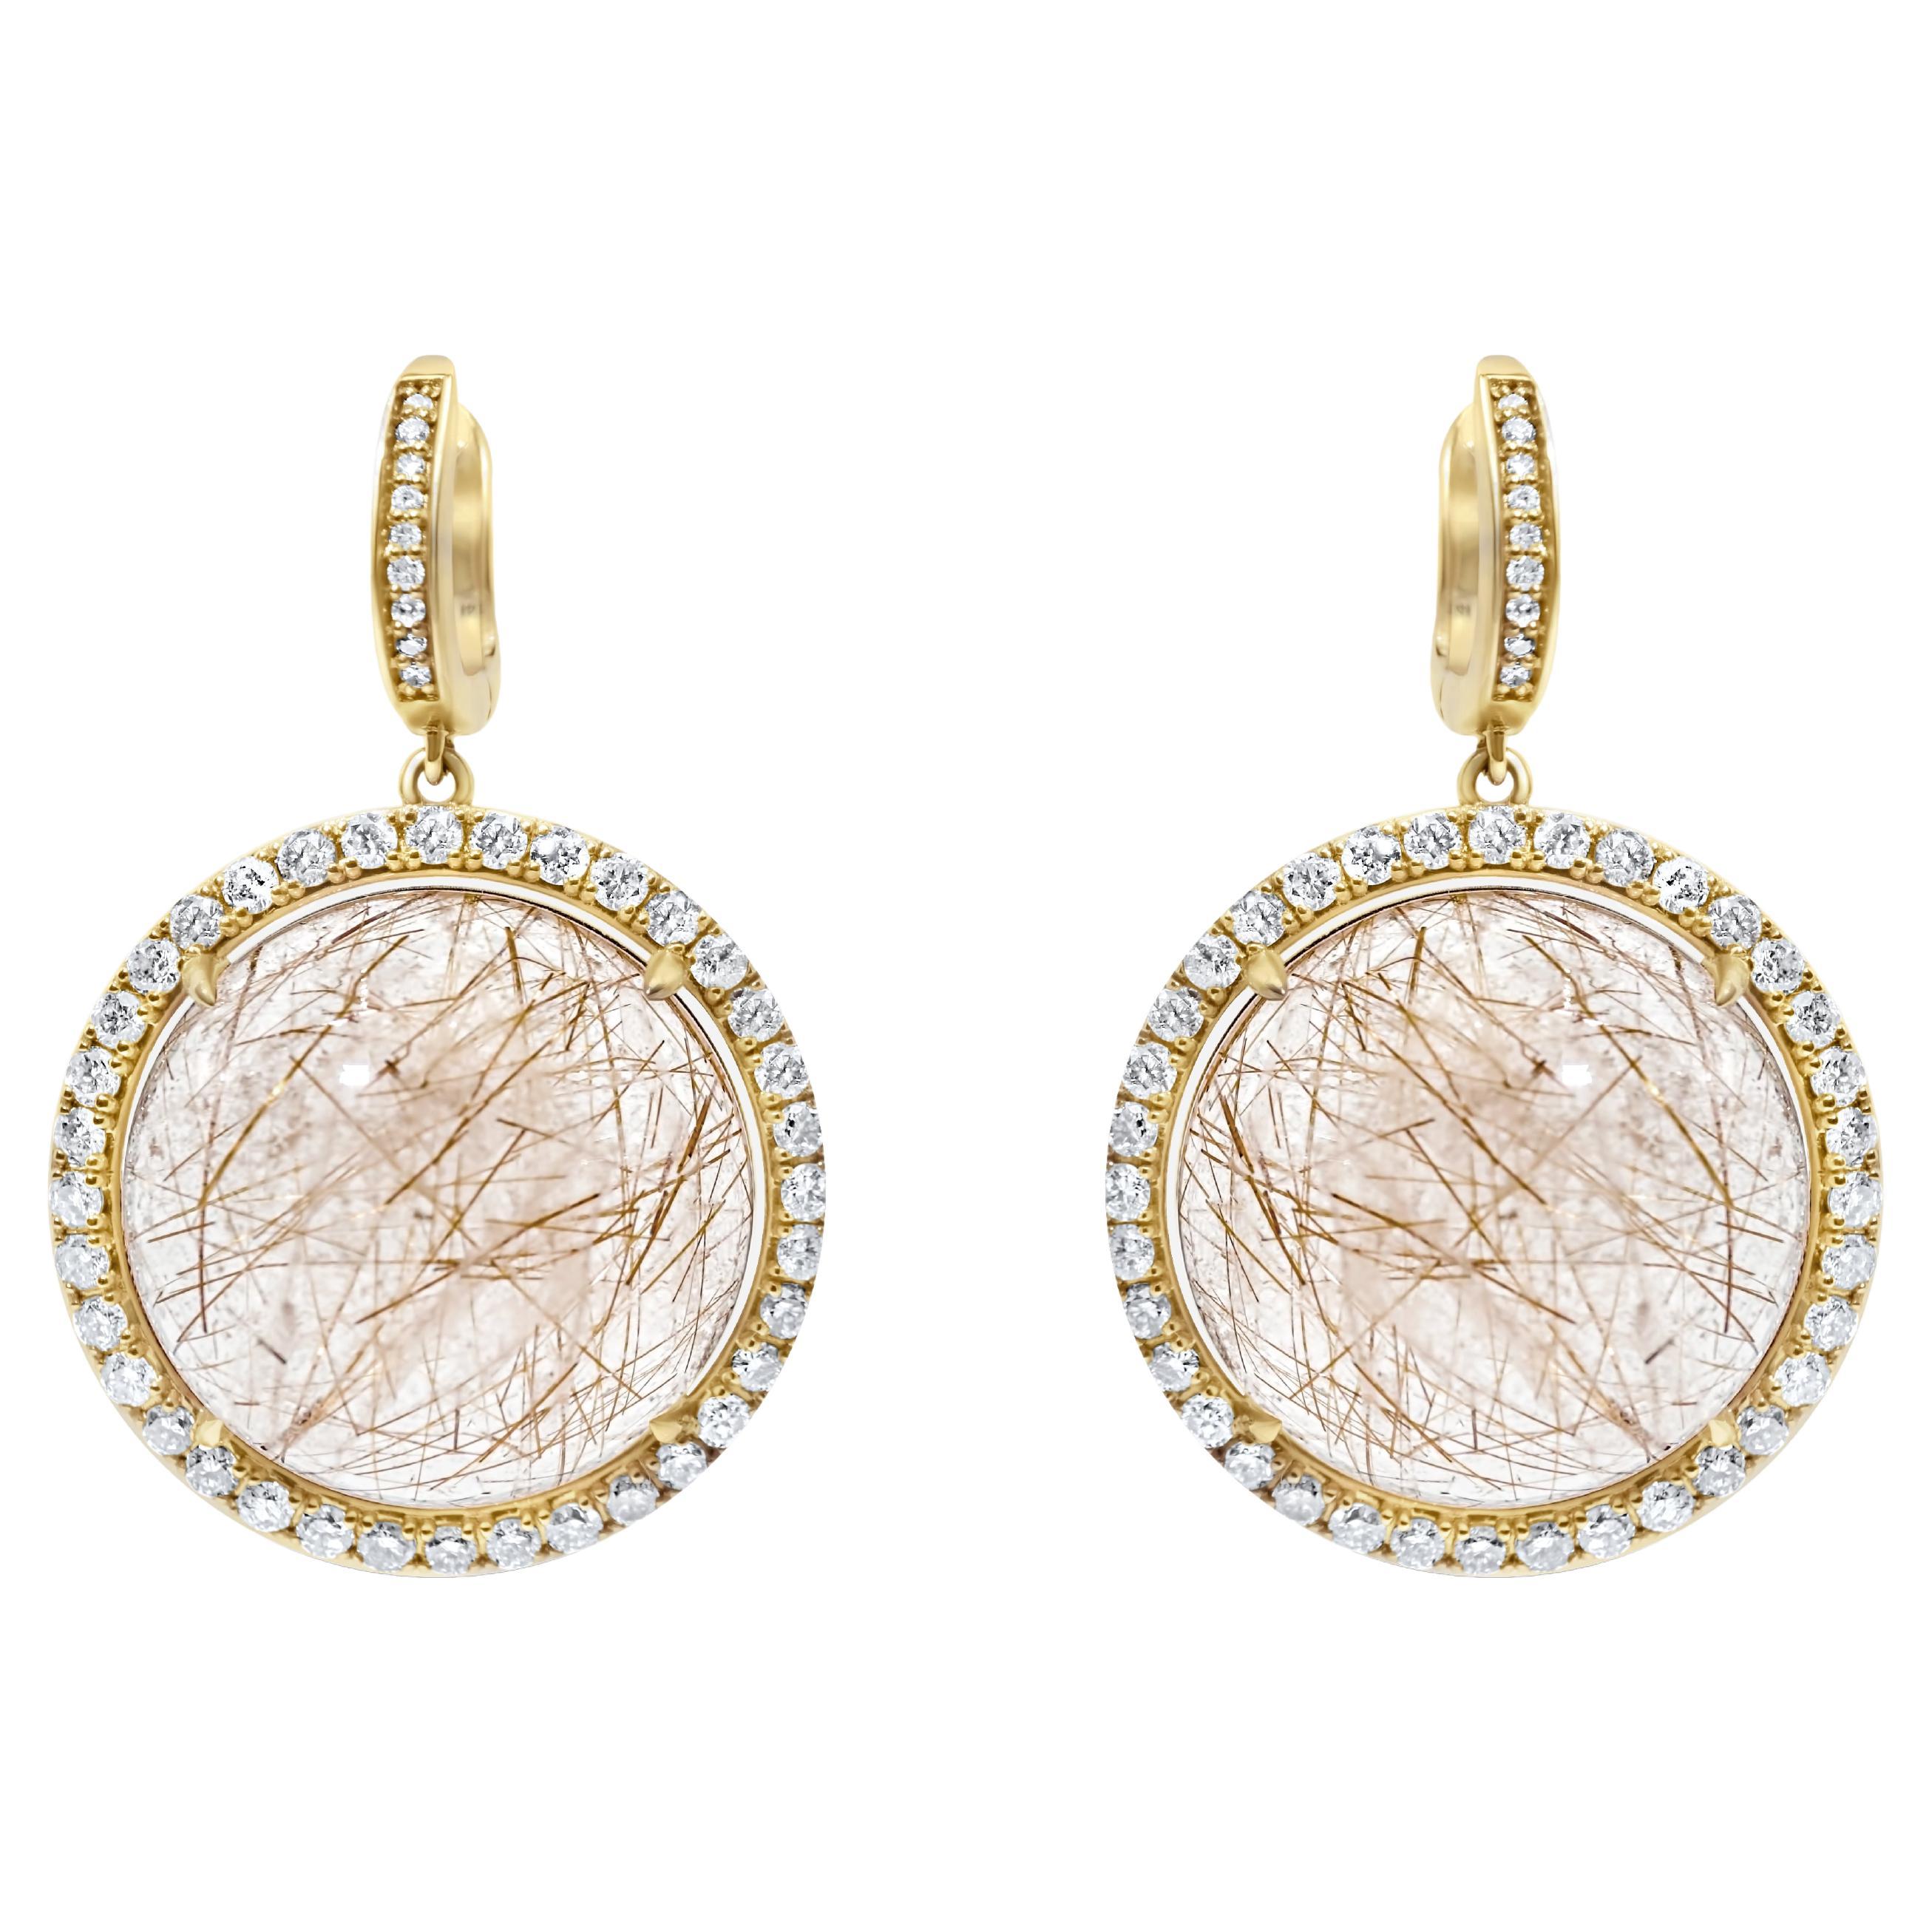 Boucles d'oreilles en or 14 carats avec cabochons ronds de quartz rose pêche et halo de diamants